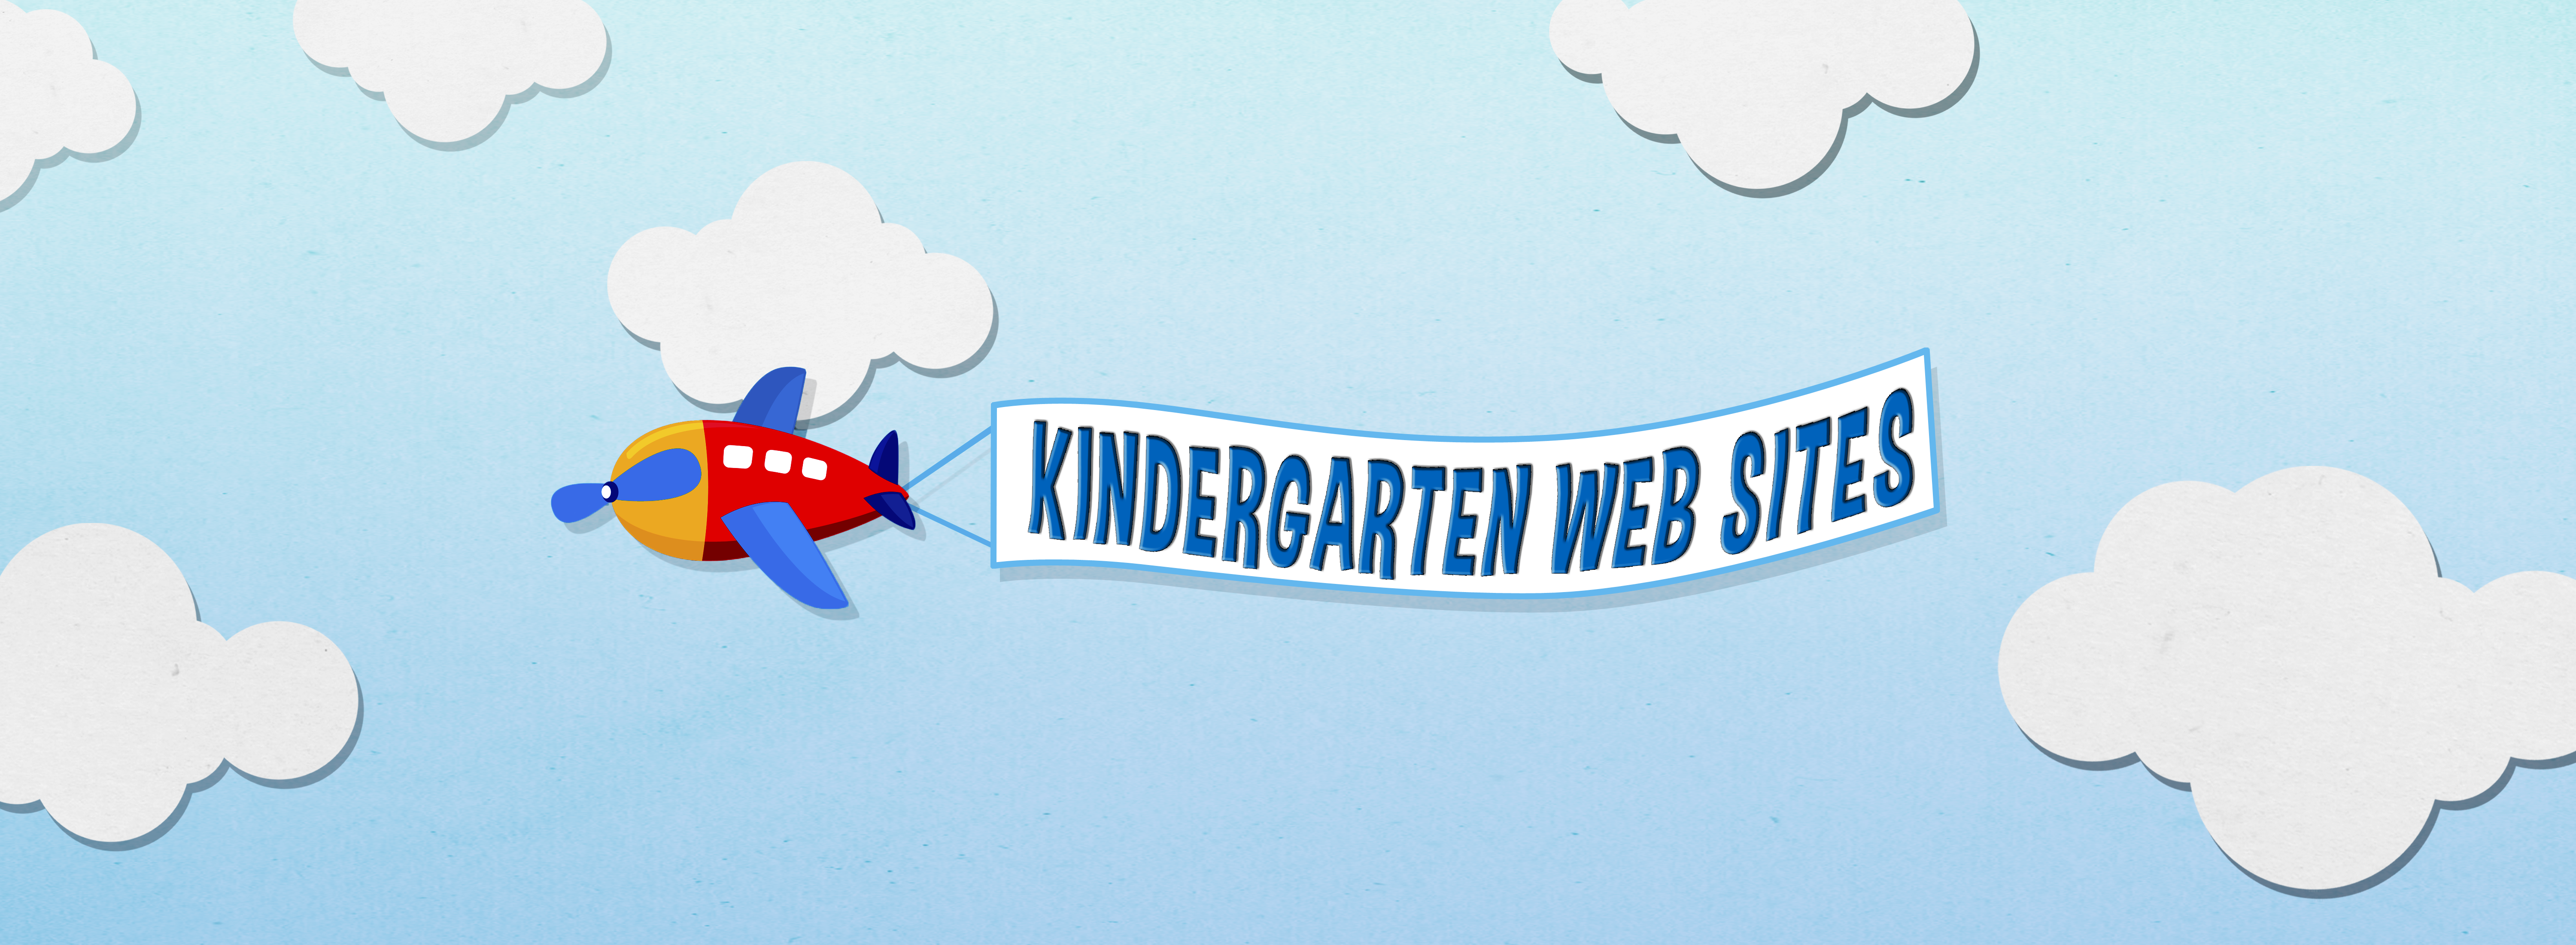 Kindergarten Web Sites